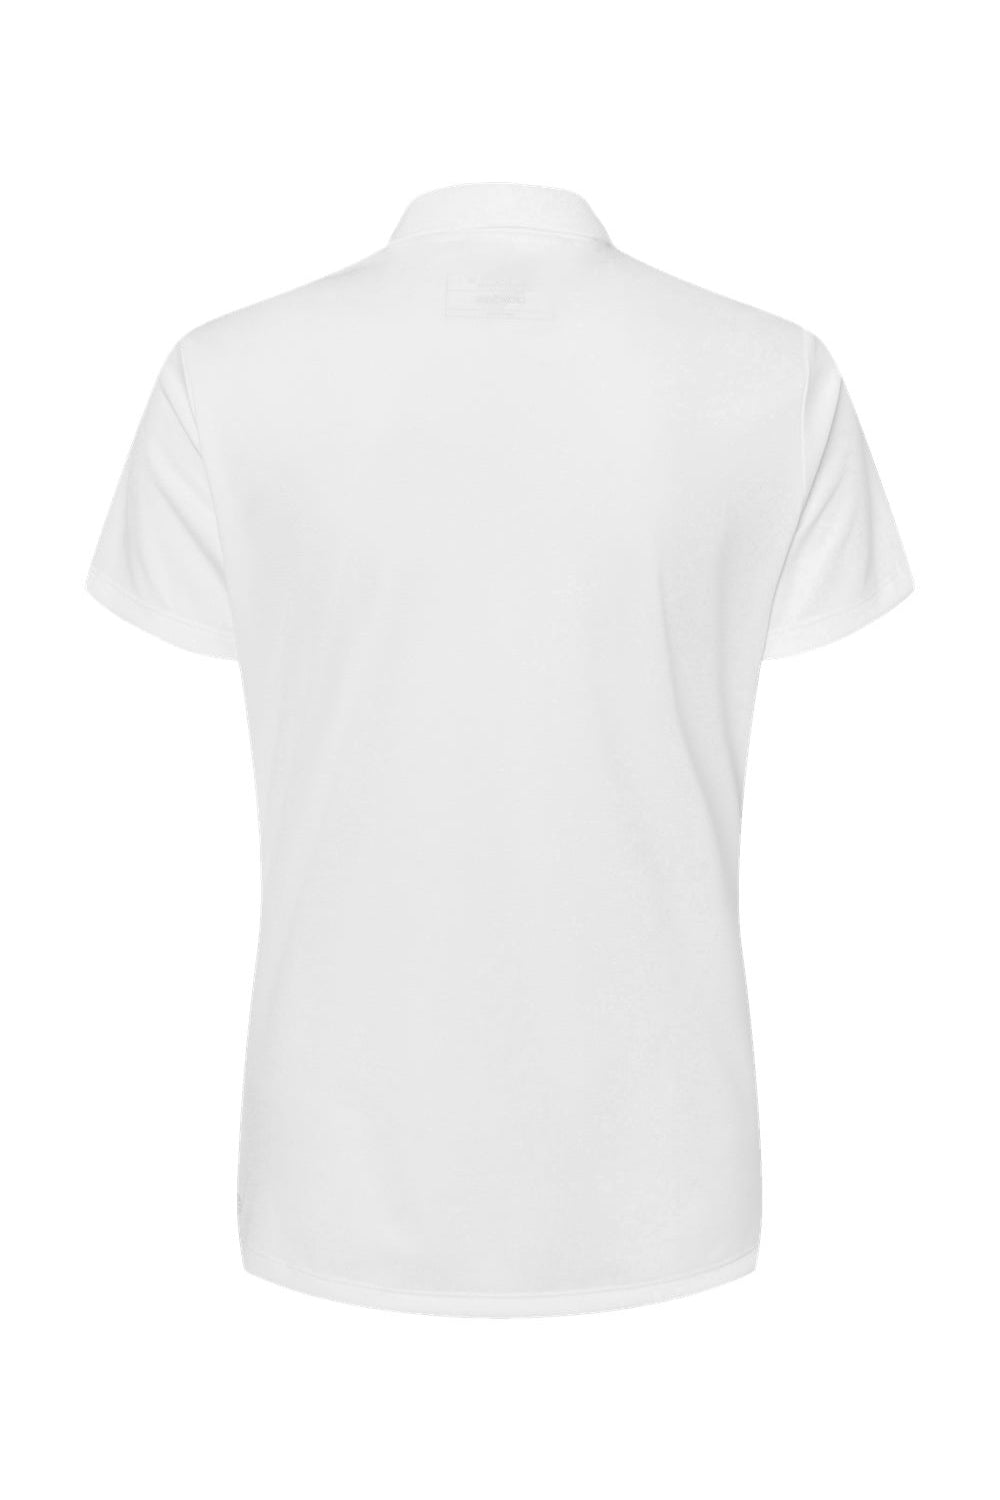 Adidas A431 Womens Basic Short Sleeve Polo Shirt White Flat Back